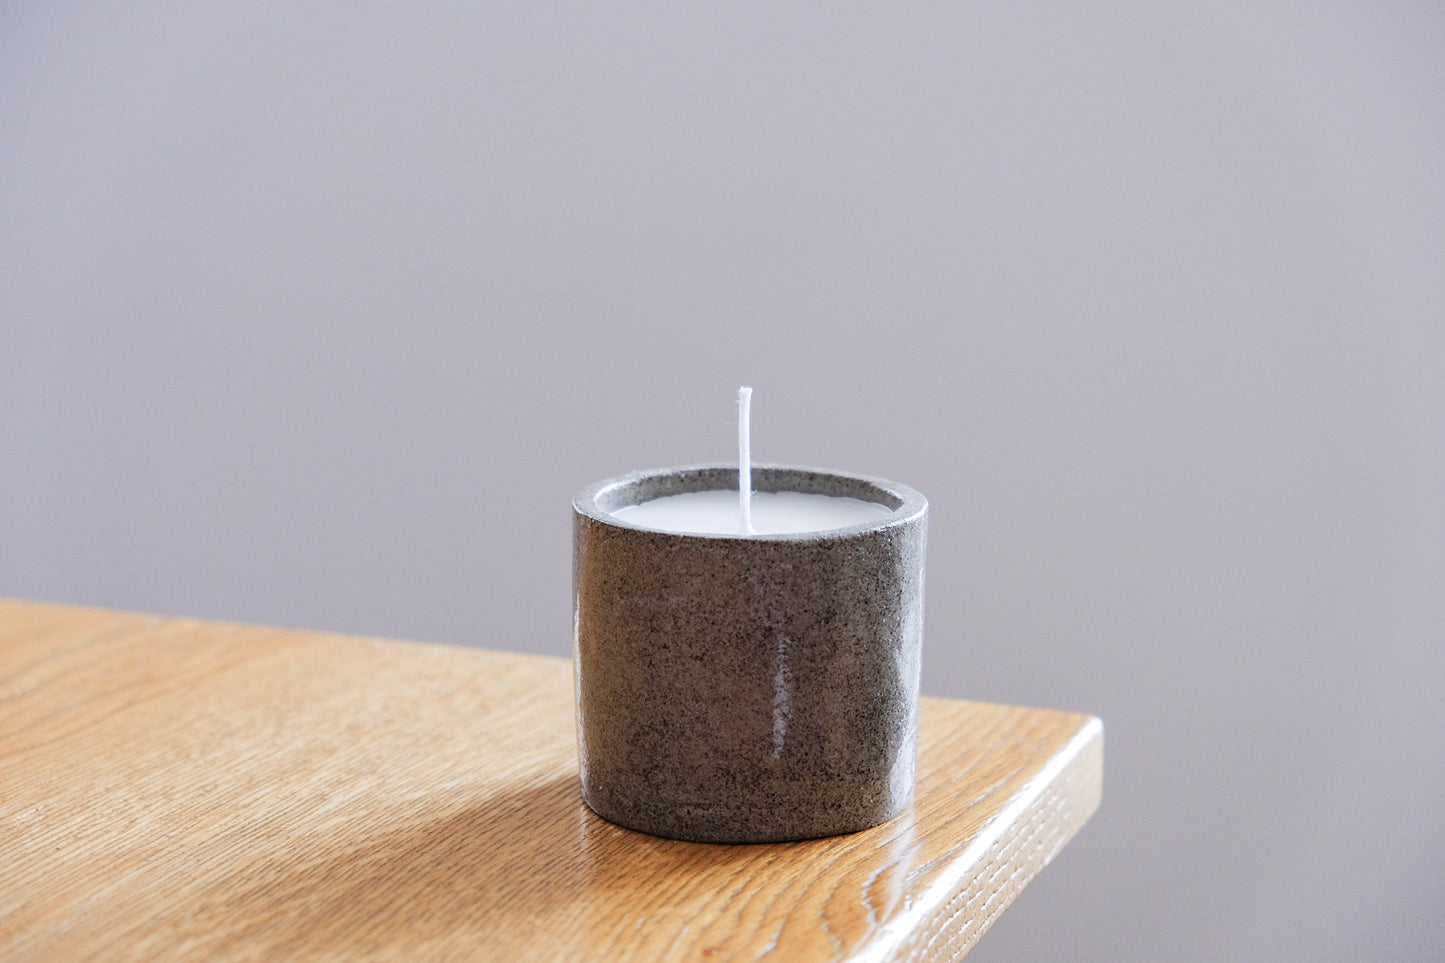 Candle in ceramic jar